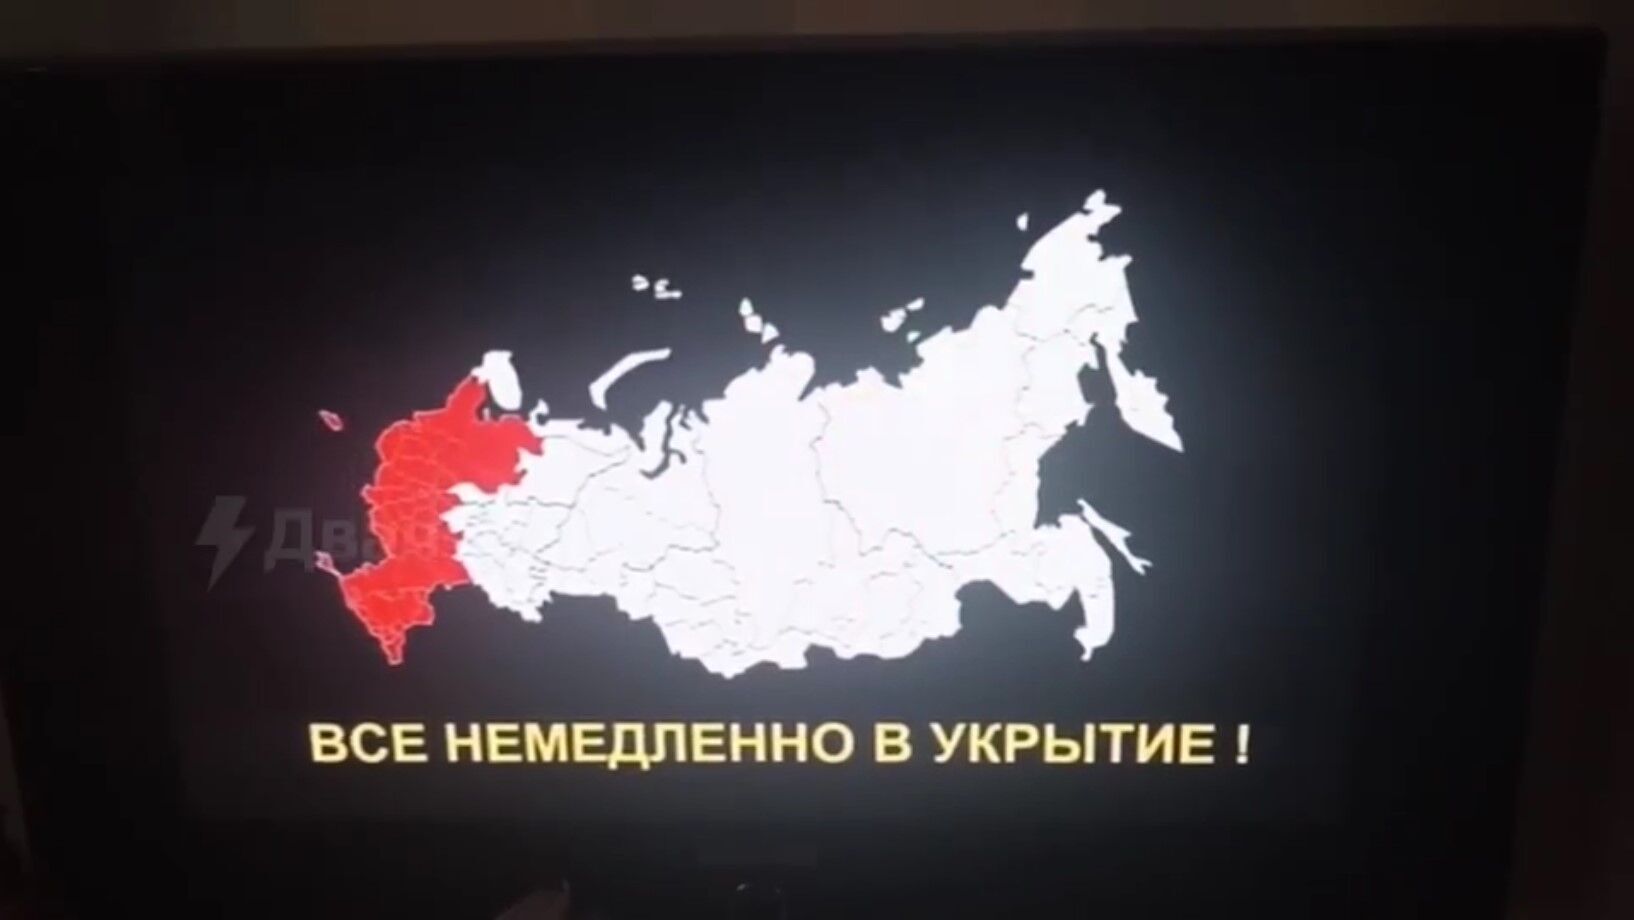 "Усі негайно в укриття": хакери знову зламали російське радіо і ТБ та запустили сигнал повітряної тривоги. Відео 